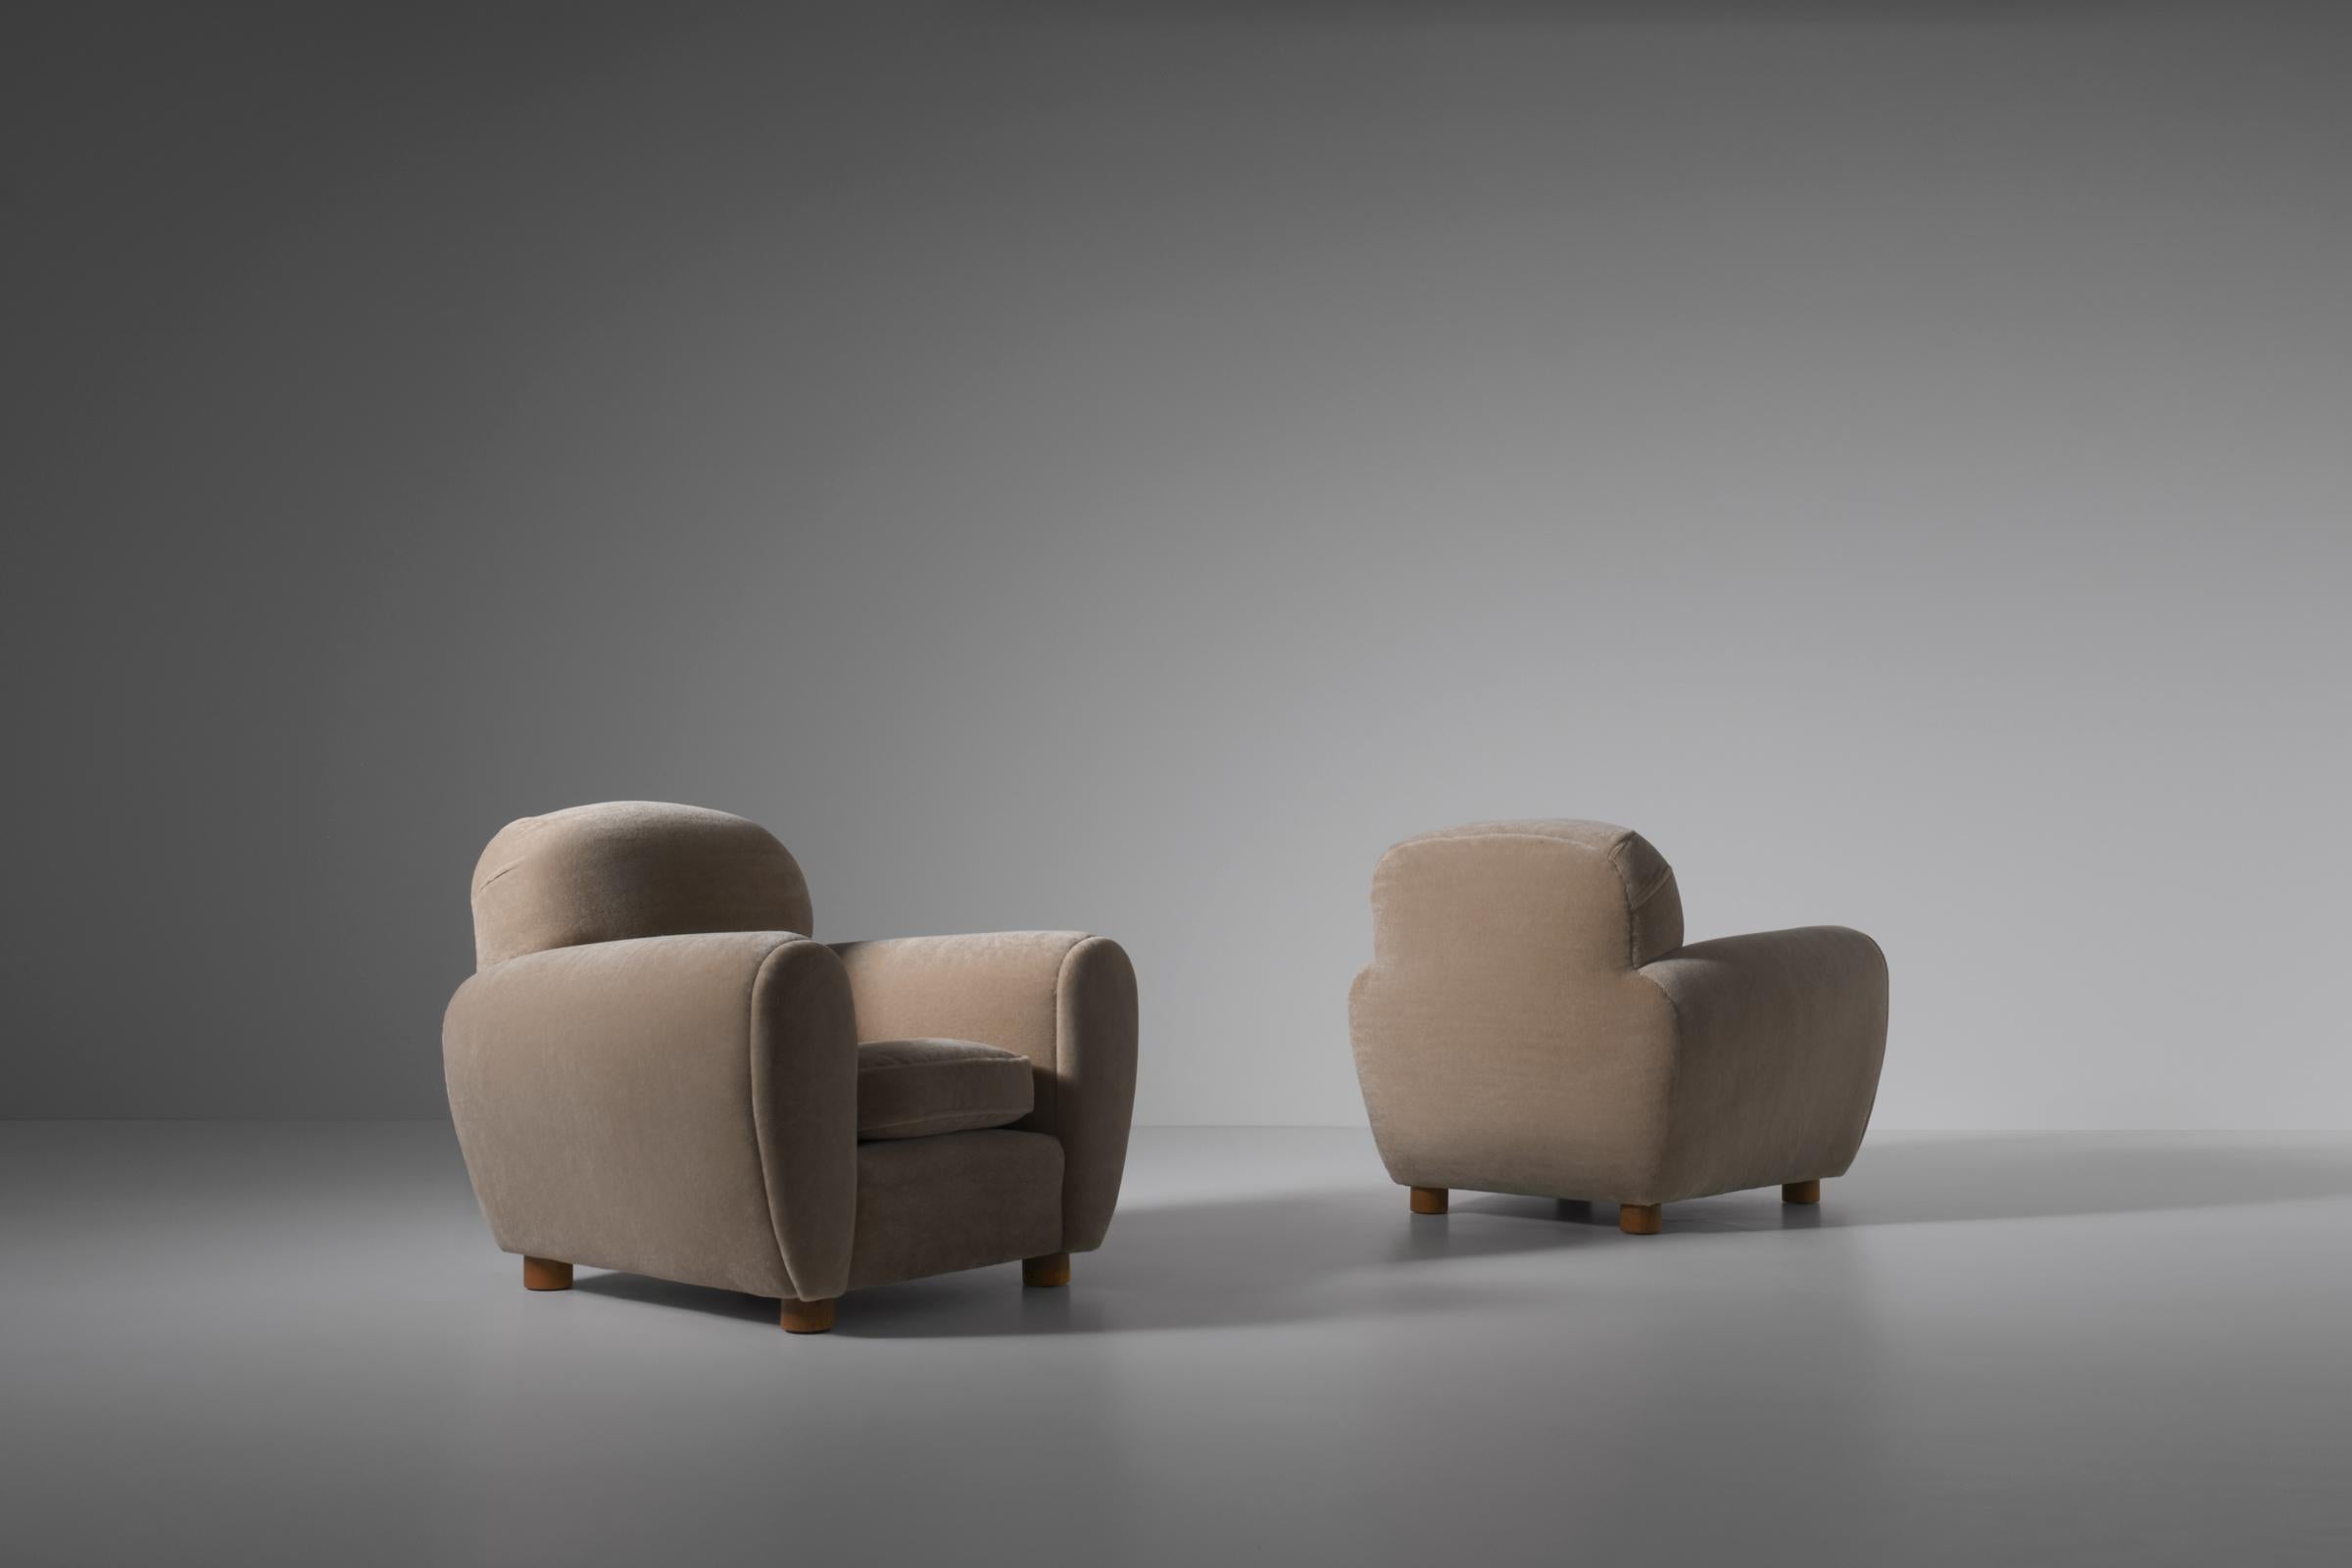 Superbe paire de chaises longues, France, années 1950. Des formes audacieuses impressionnantes et des lignes intéressantes avec des pieds en bois de chêne en forme de cylindre. Les chaises sont entièrement reconditionnées et sont tapissées d'un